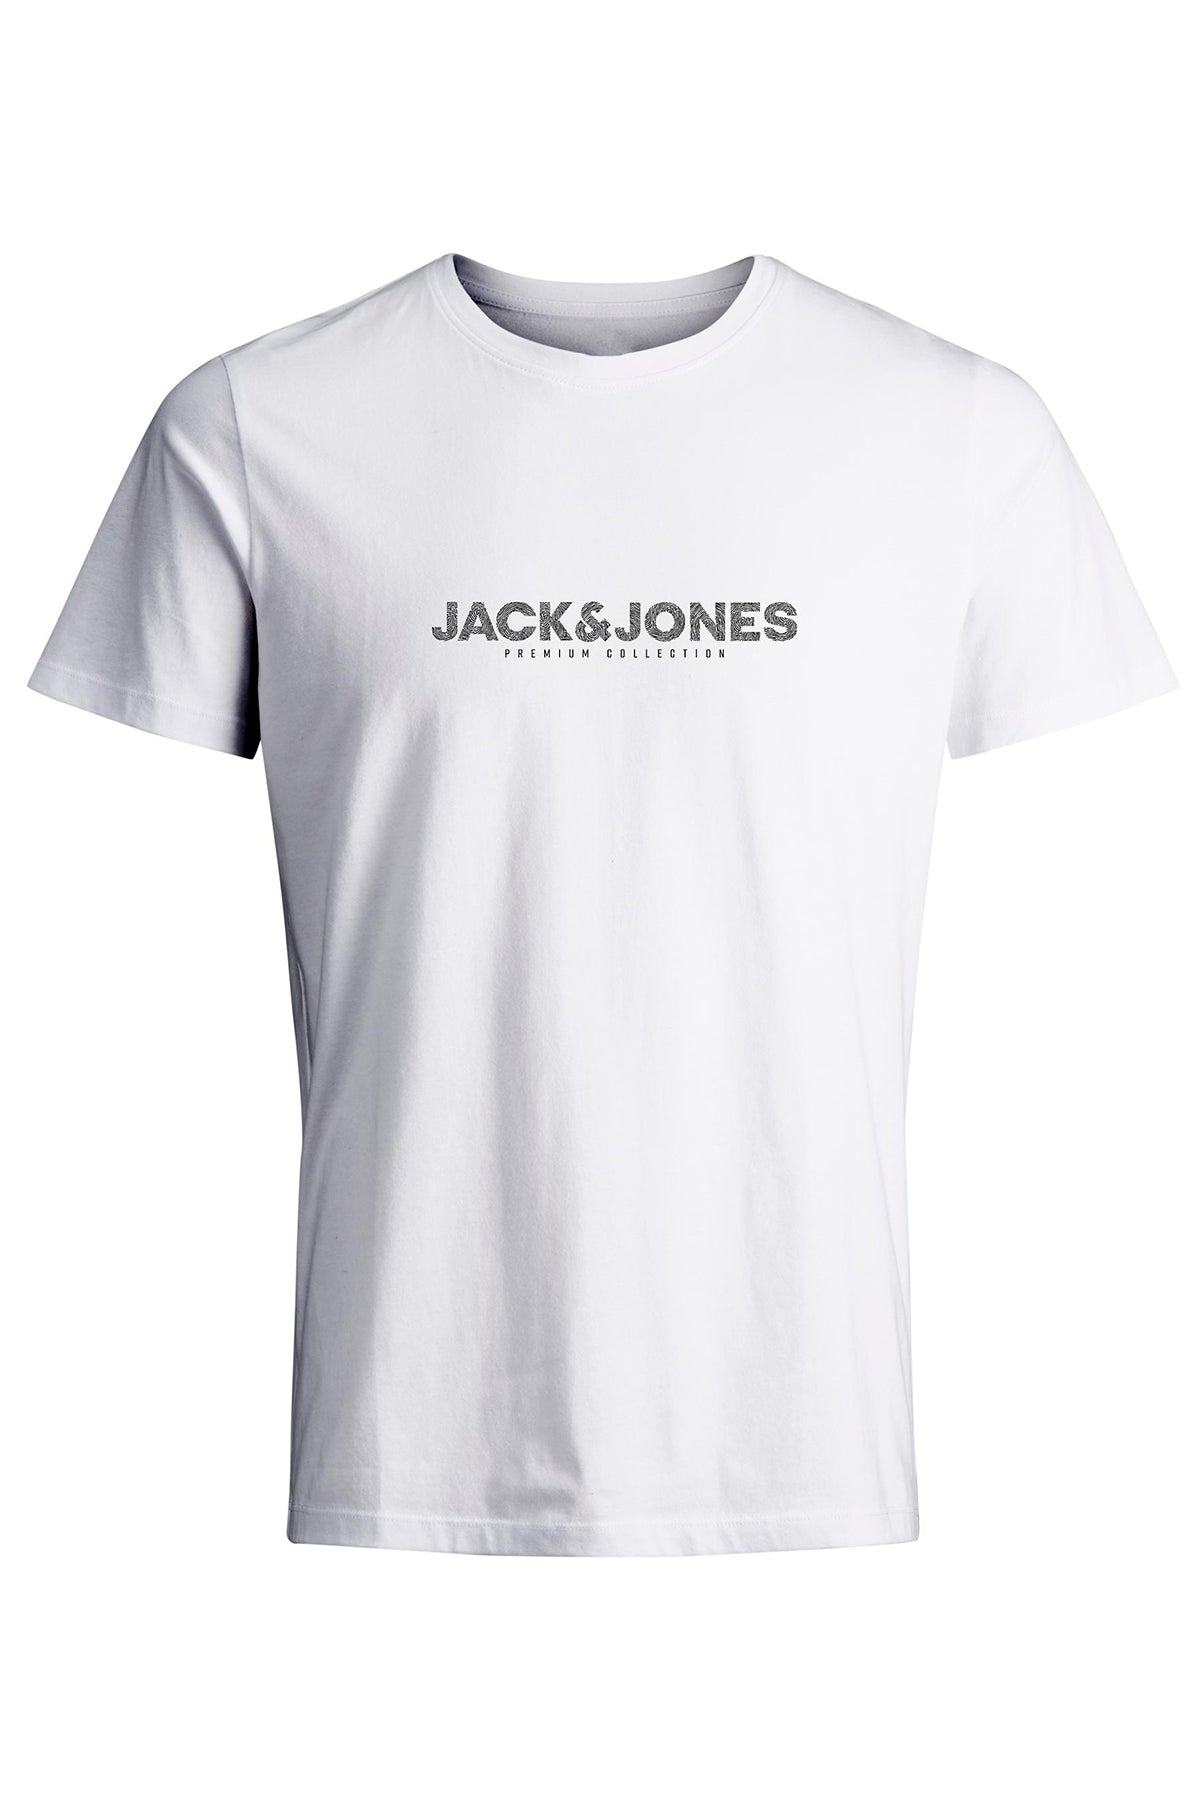 Jack & Jones Plus Plus Size 100% Cotton Regular Fit Crew Neck Men's T Shirt - WHITE